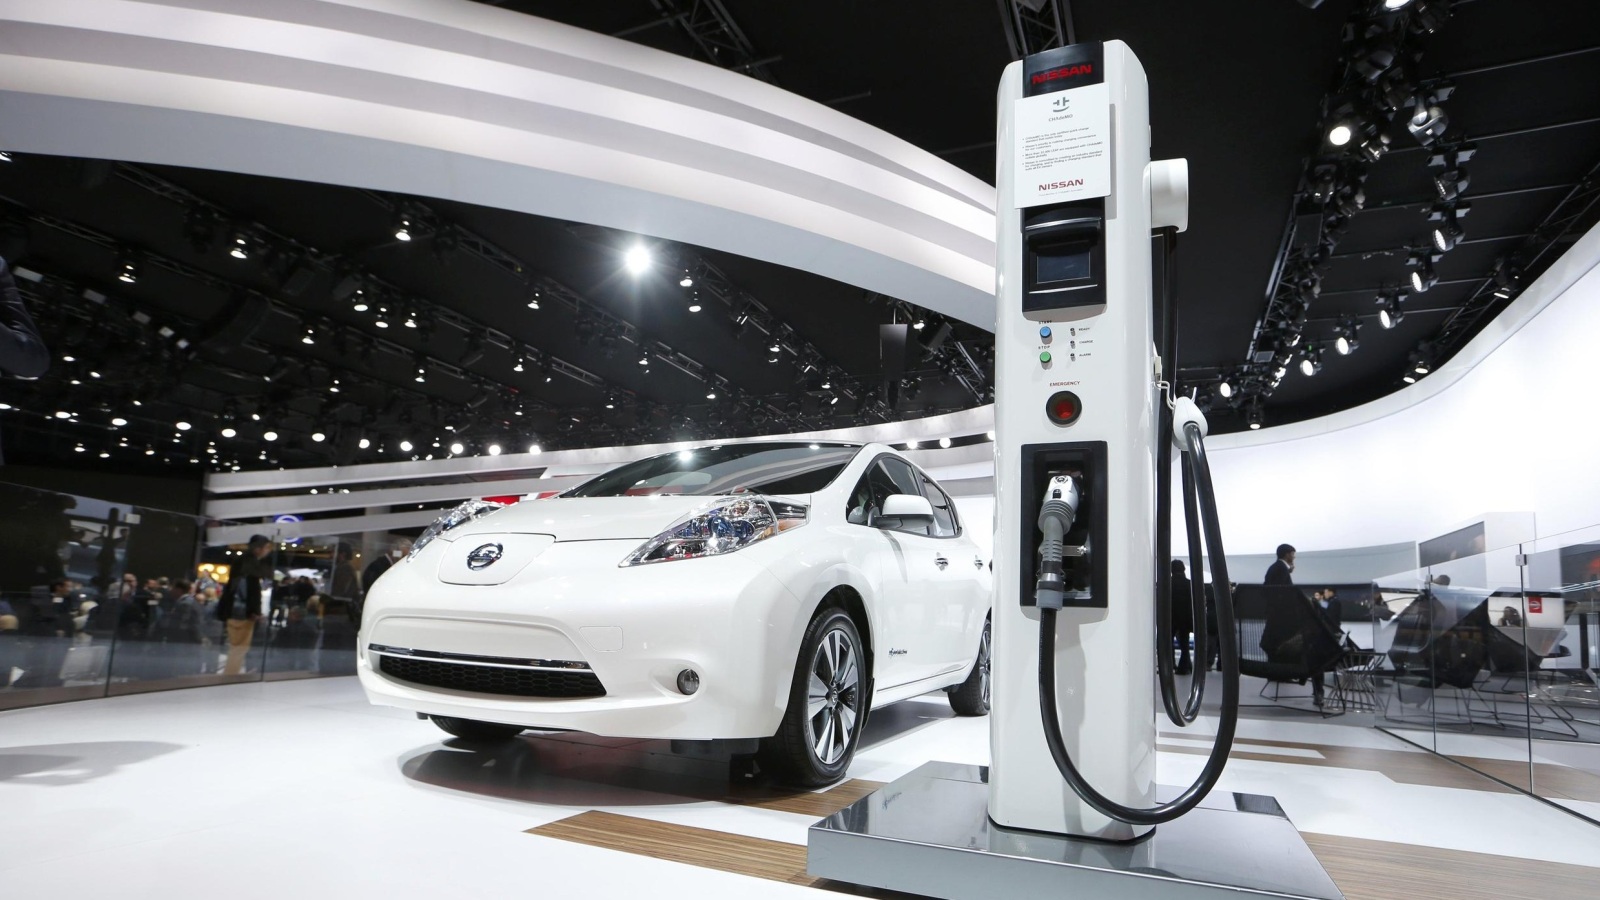 ارتفاع أسعار النفط يدفع باتجاه تطوير تقنيات بديلة مثل السيارات الكهربائية (رويترز)